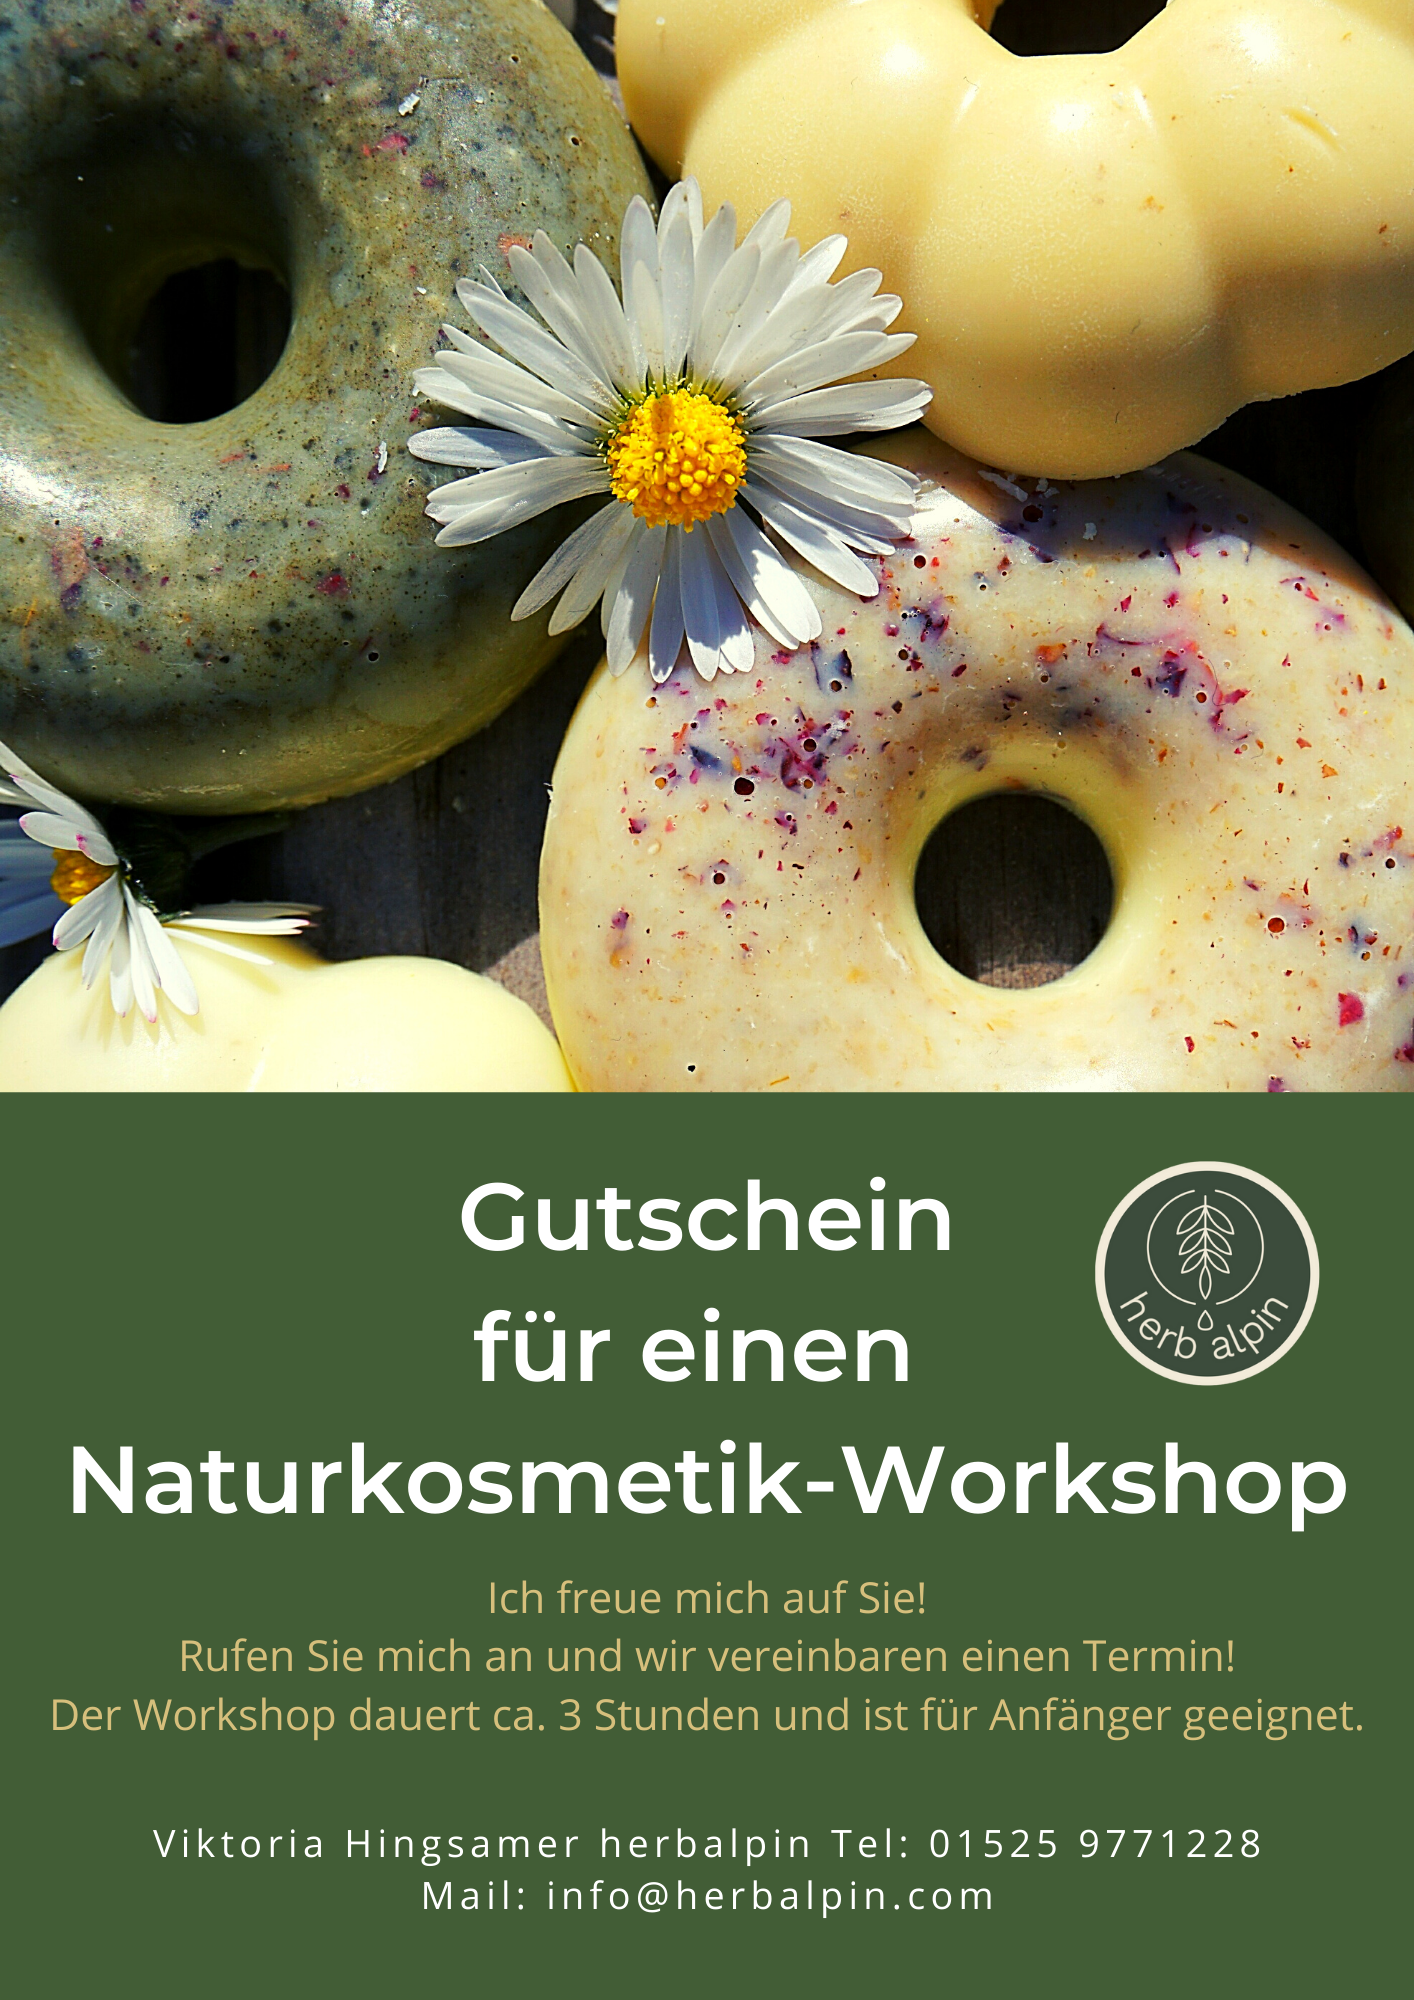 Gutschein Naturkosmetik Workshop